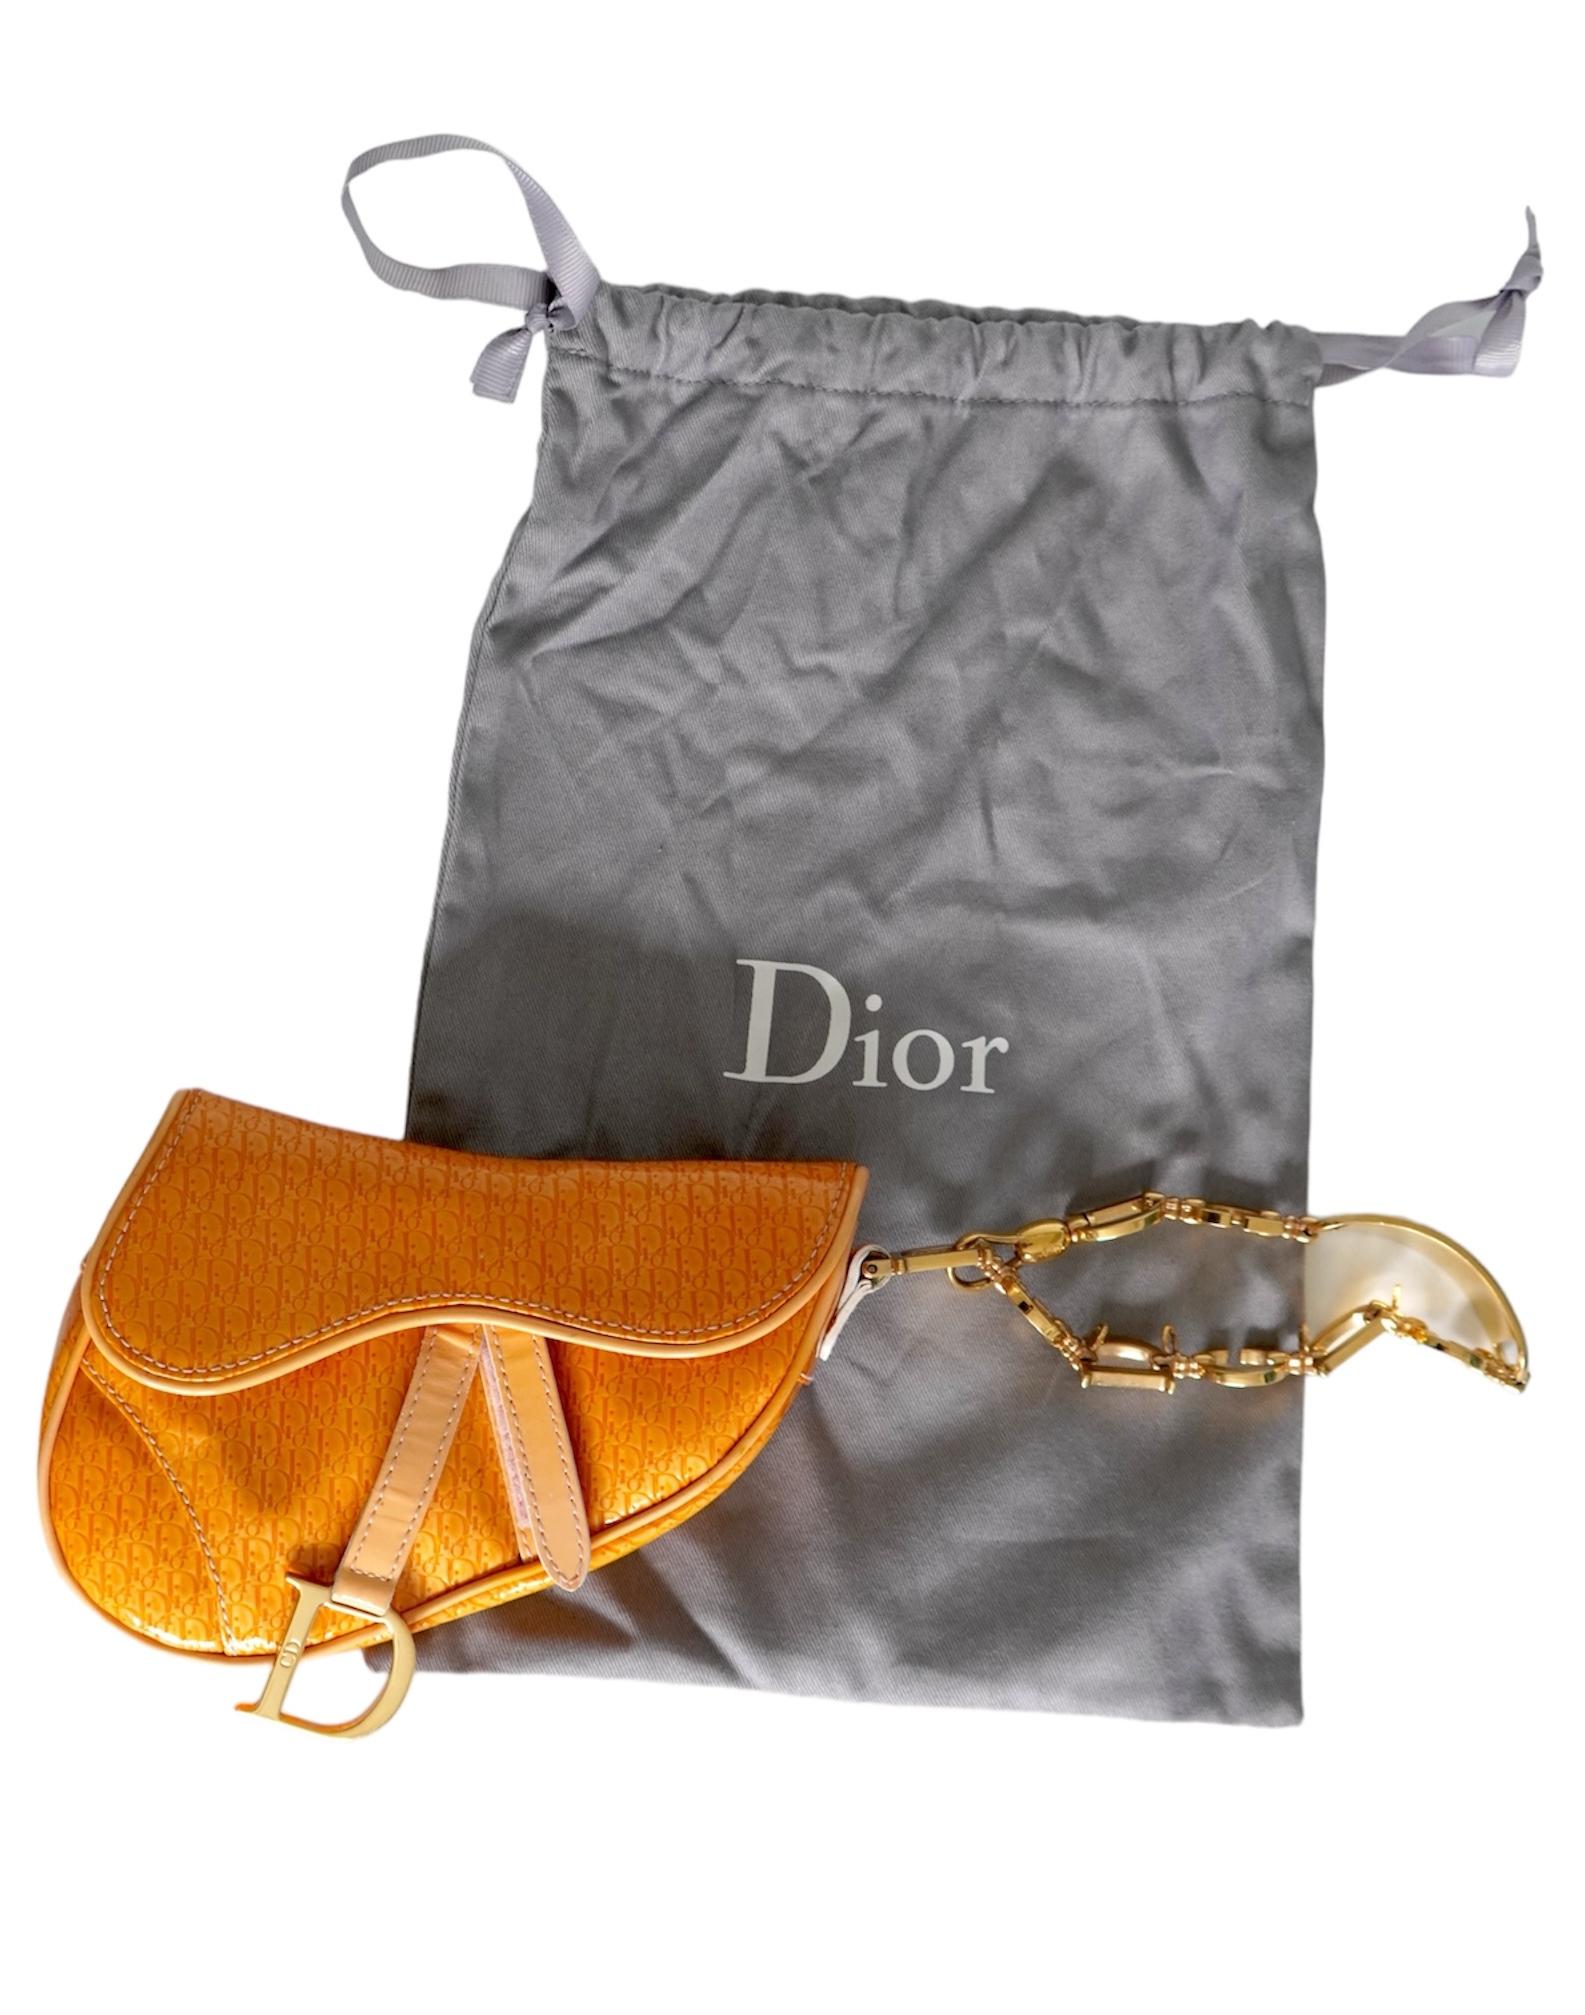 Dior Saddle Bag Monogram en cuir verni jaune et orange 
Fermeture velcro
Matériel de couleur or
Compartiment unique
Poche intérieure
Etiquette logo en cuir embossé Christian Dior
Vendu avec sac à poussière